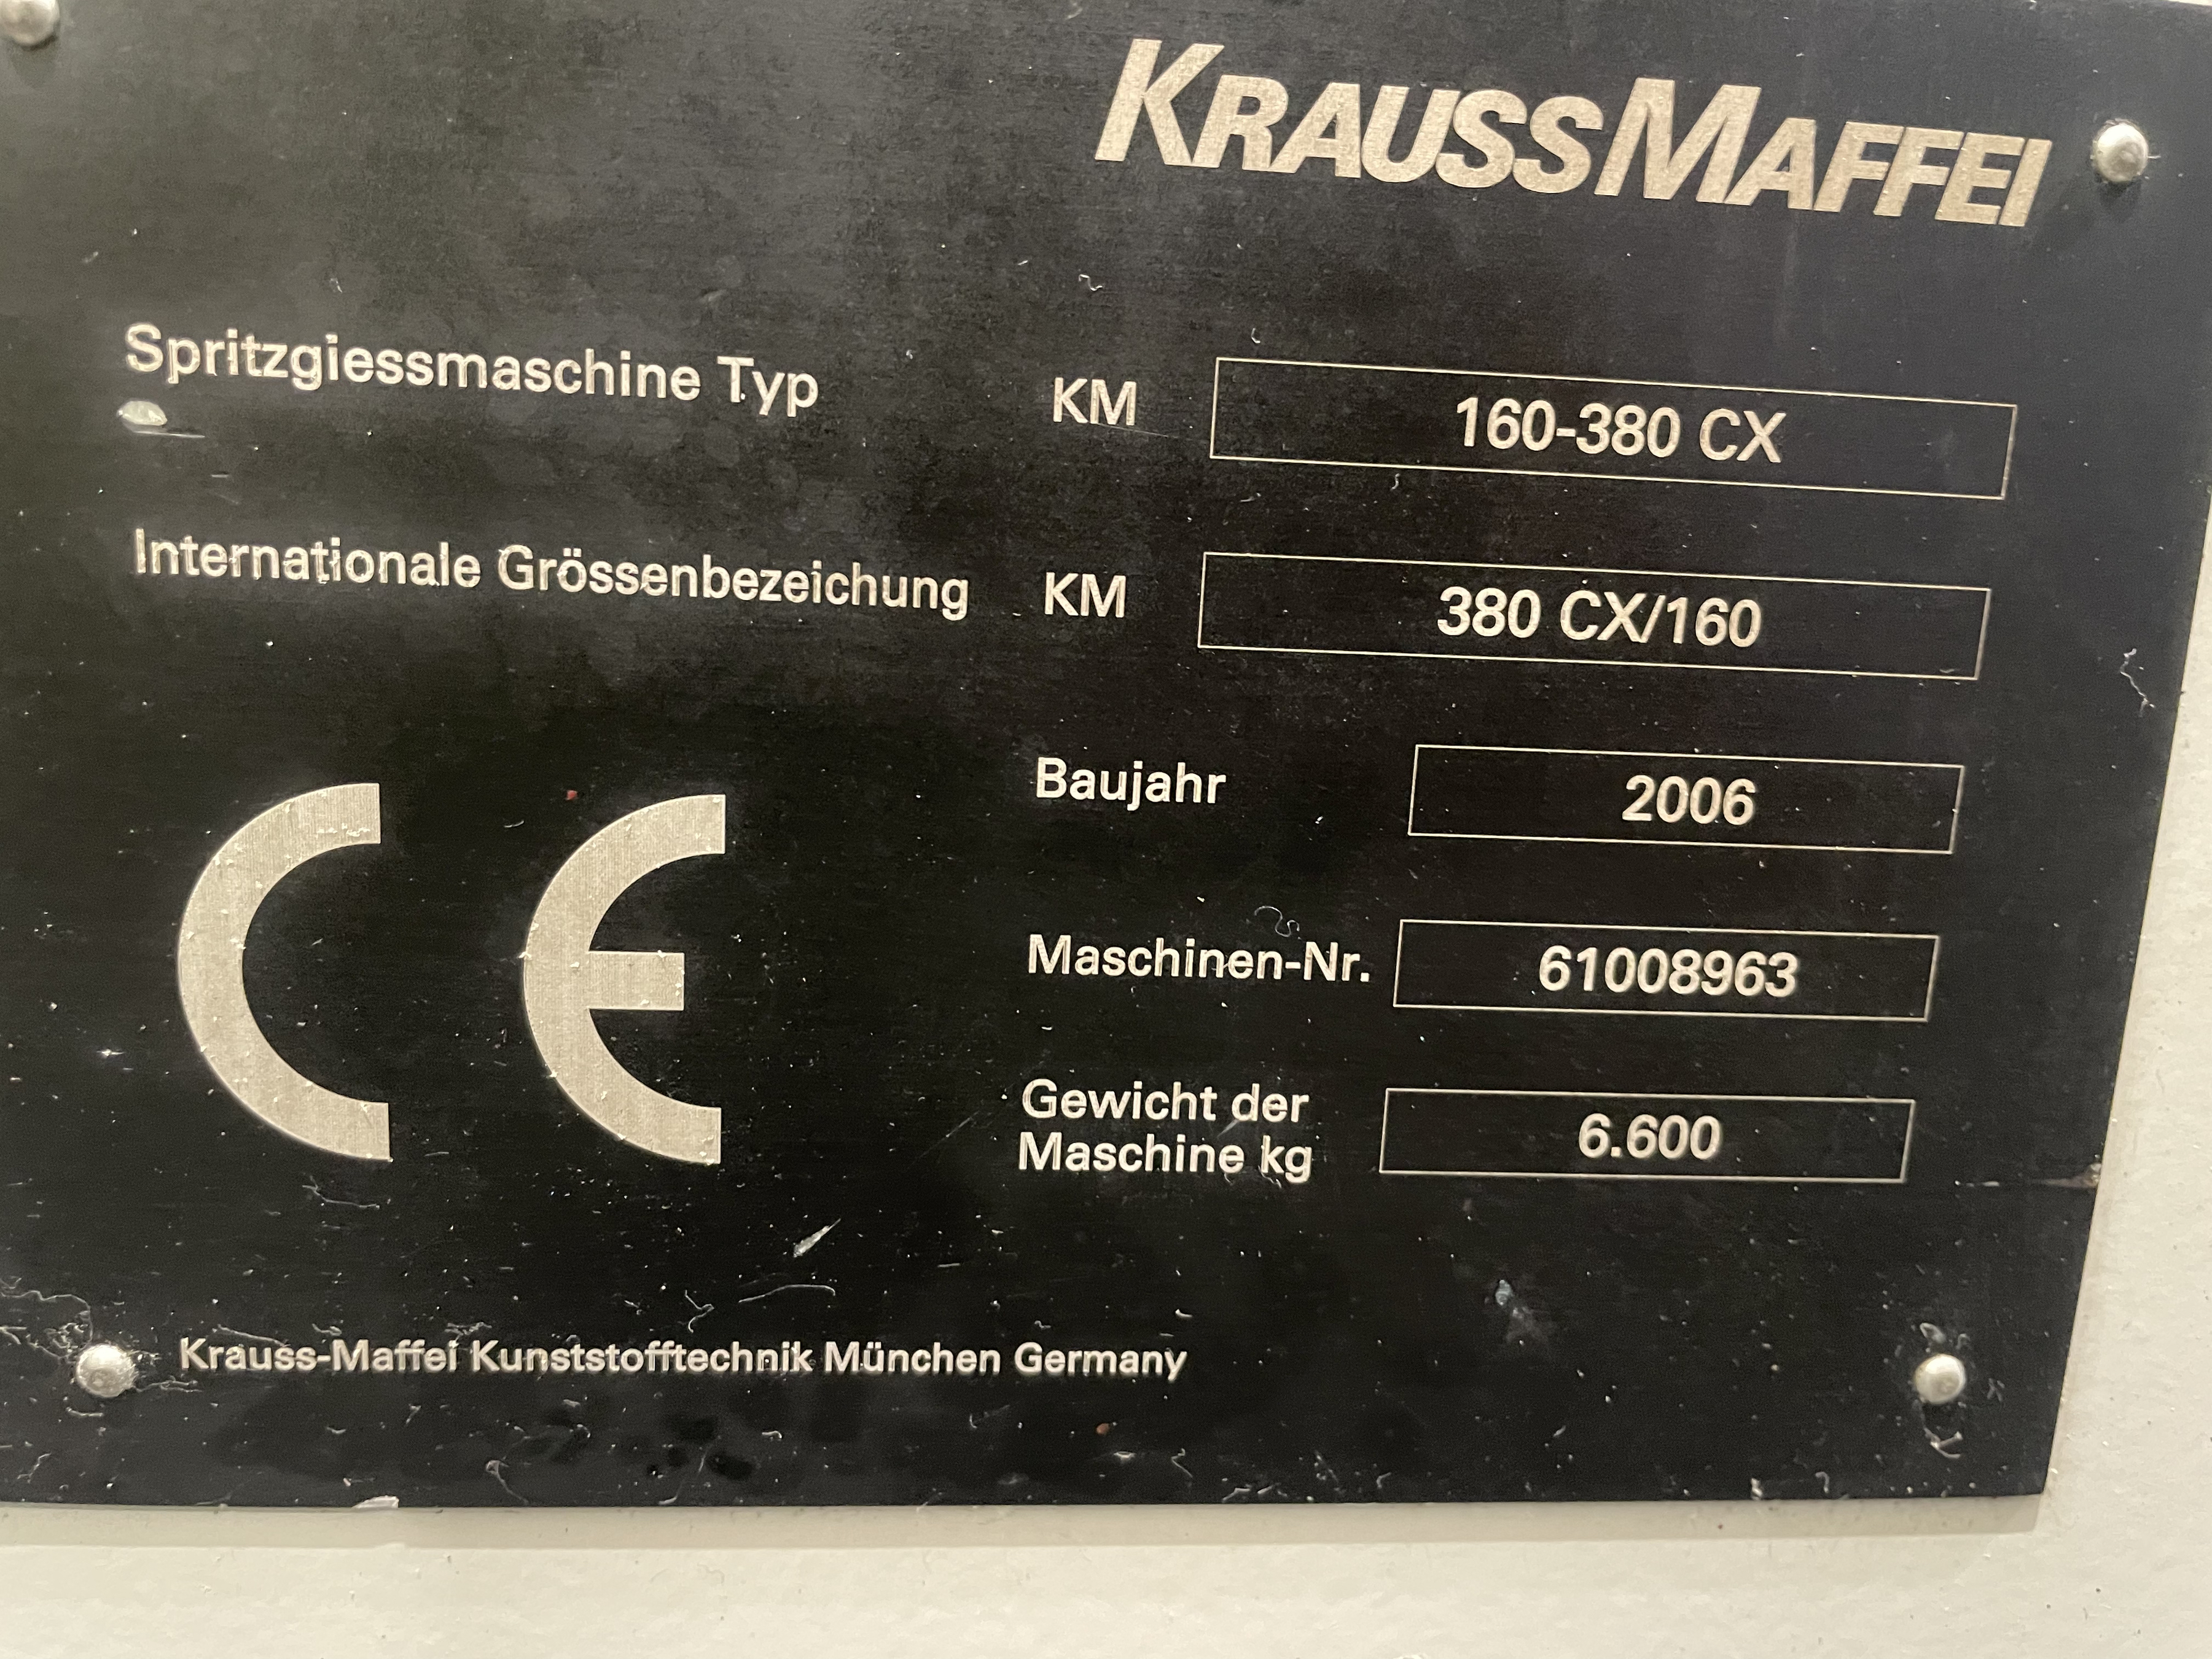 Krauss-Maffei KM 160/380 CX